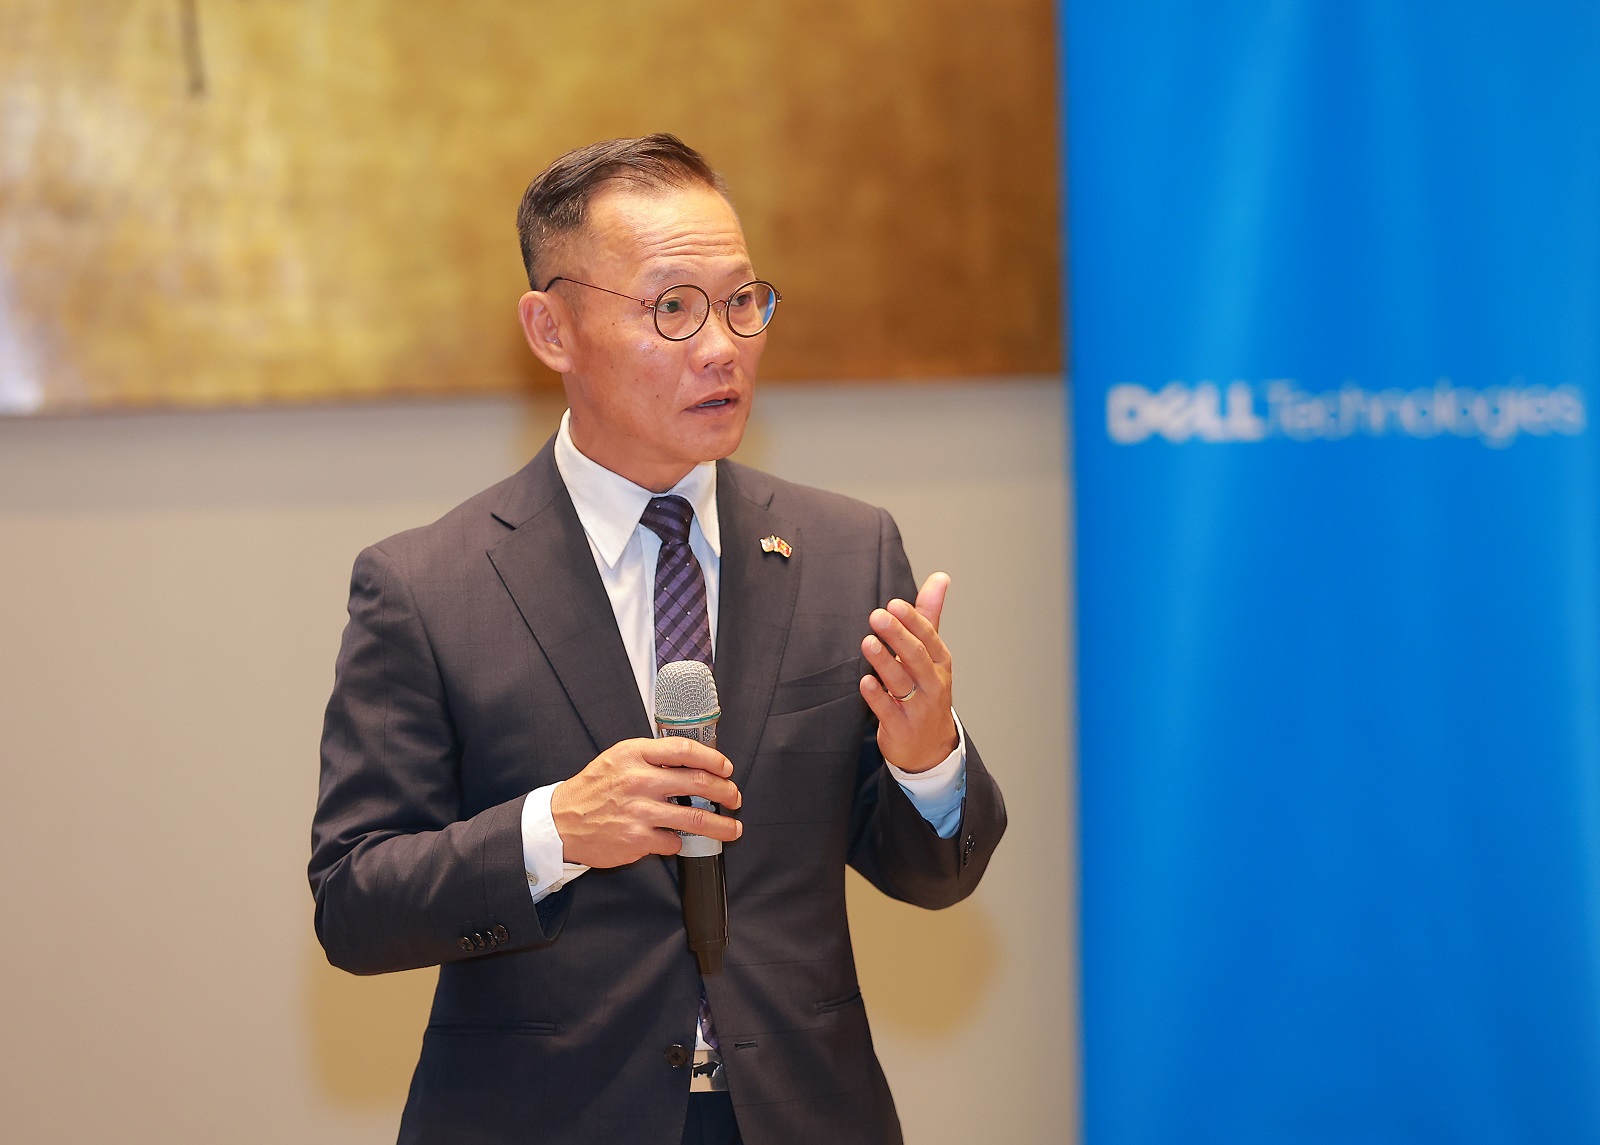 Nghiên cứu từ Dell: Hơn 90% các doanh nghiệp Việt Nam xem con người là tài sản giá trị nhất cho những dự án thúc đẩy chuyển đổi số